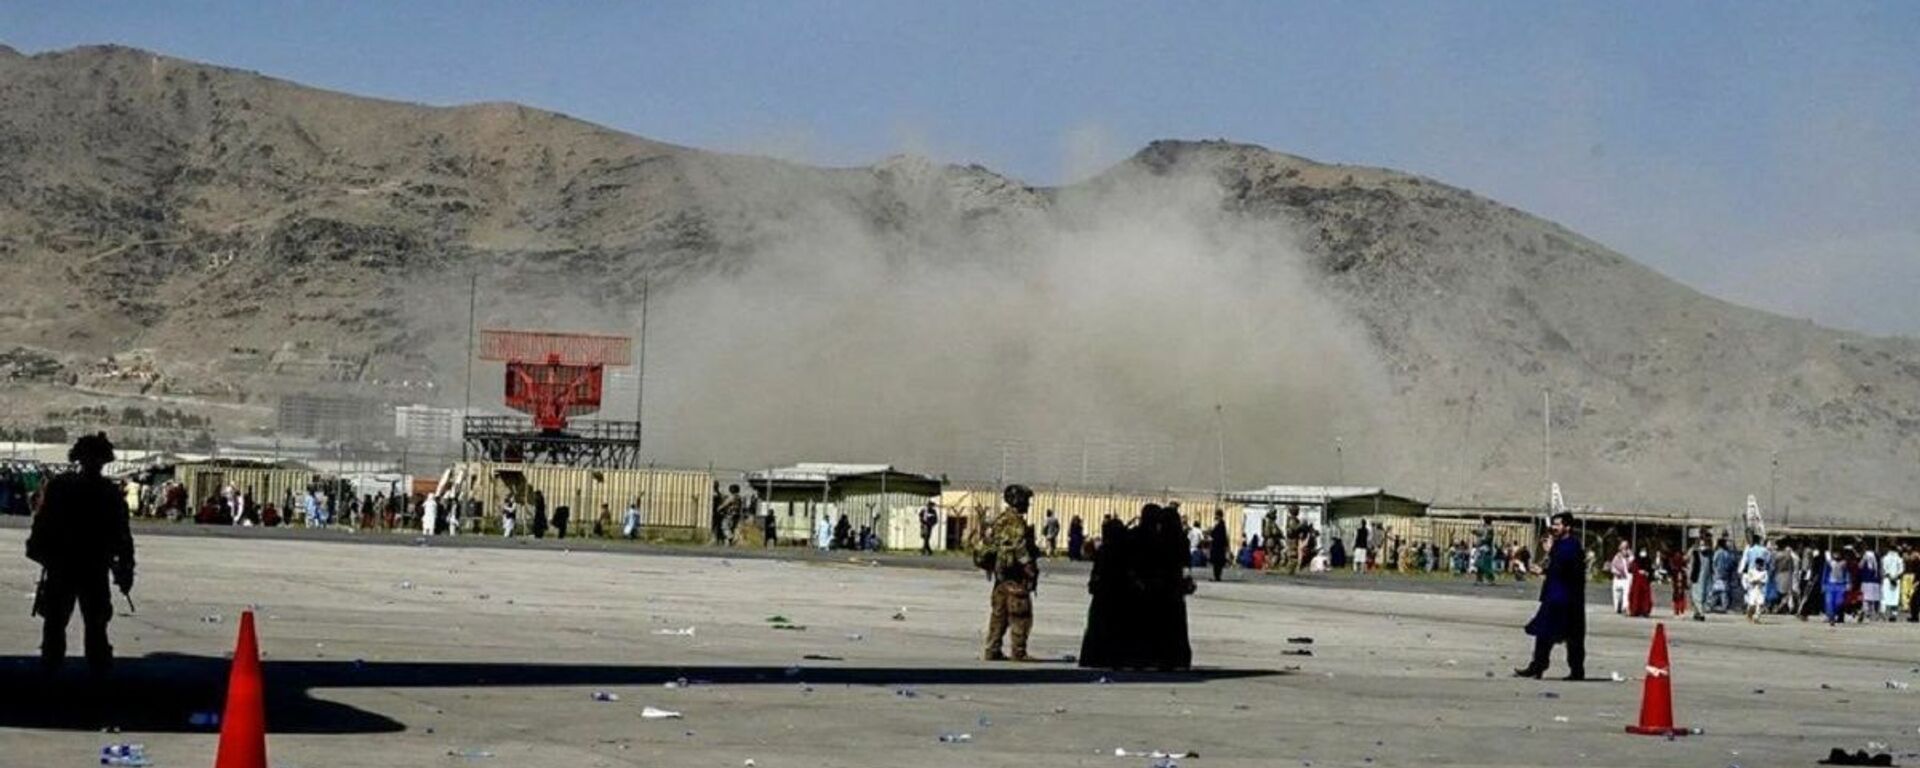 Vụ nổ ở gần sân bay Kabul - Sputnik Việt Nam, 1920, 27.08.2021